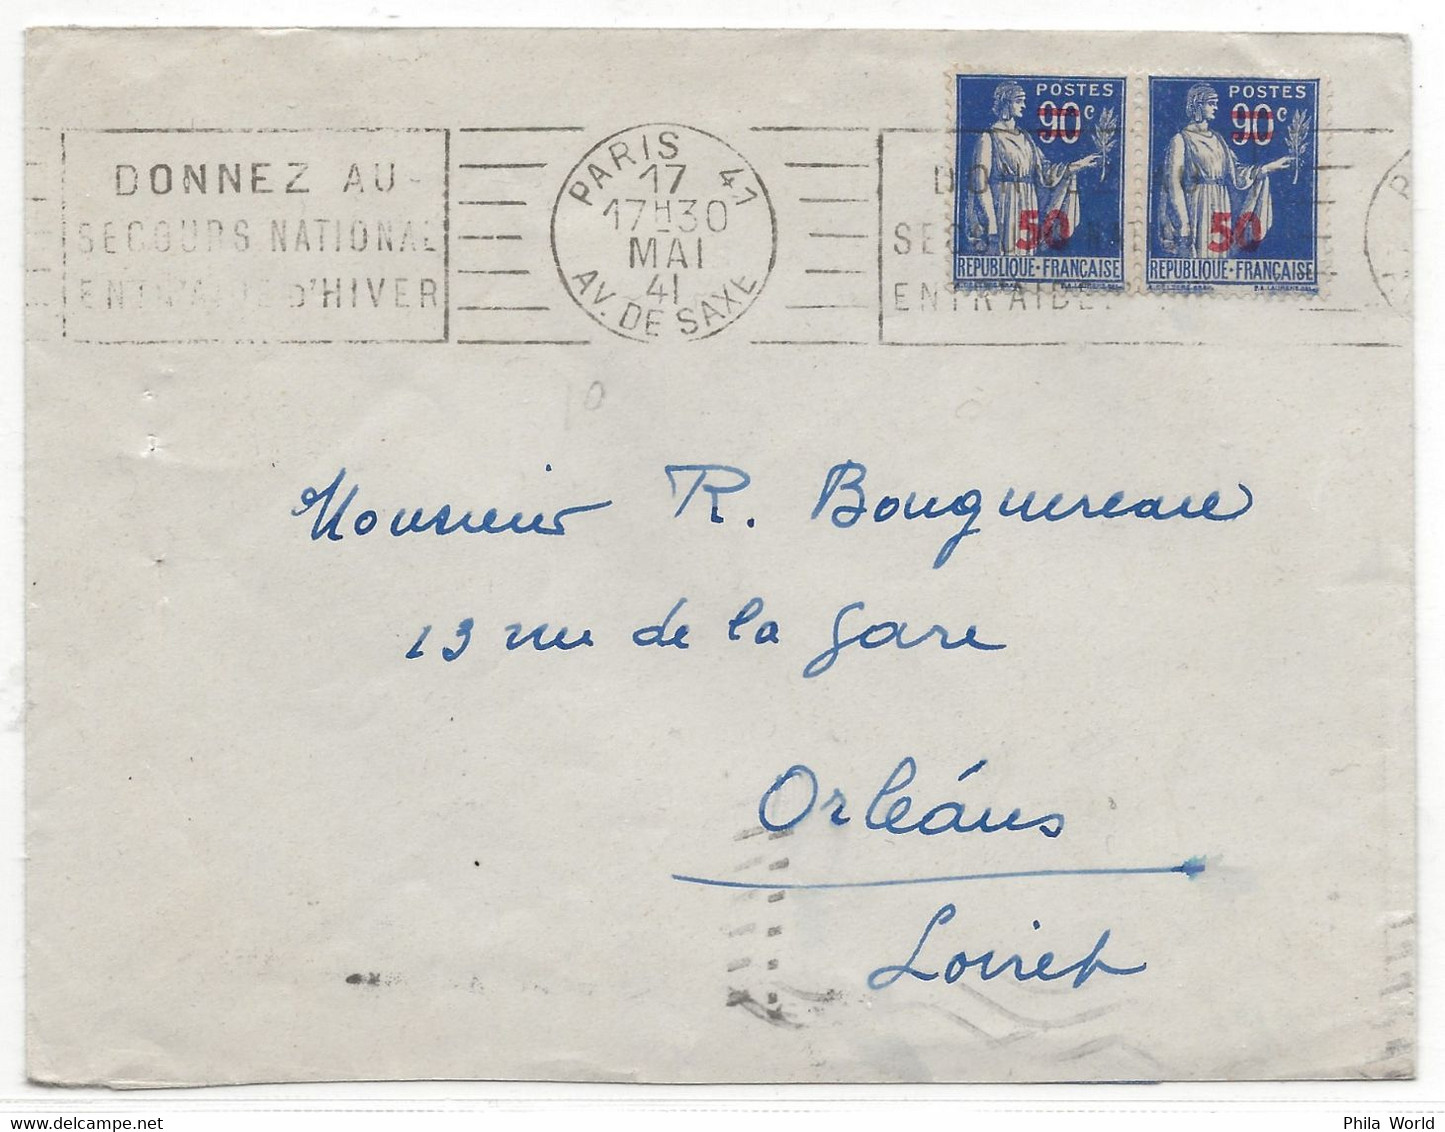 WW2 FRANCE 1941 Type PAIX Surcharge PARIS 41 SAXE DONNEZ SECOURS NATIONAL ENTRAIDE HIVER > Orleans LOIRET - Briefe U. Dokumente